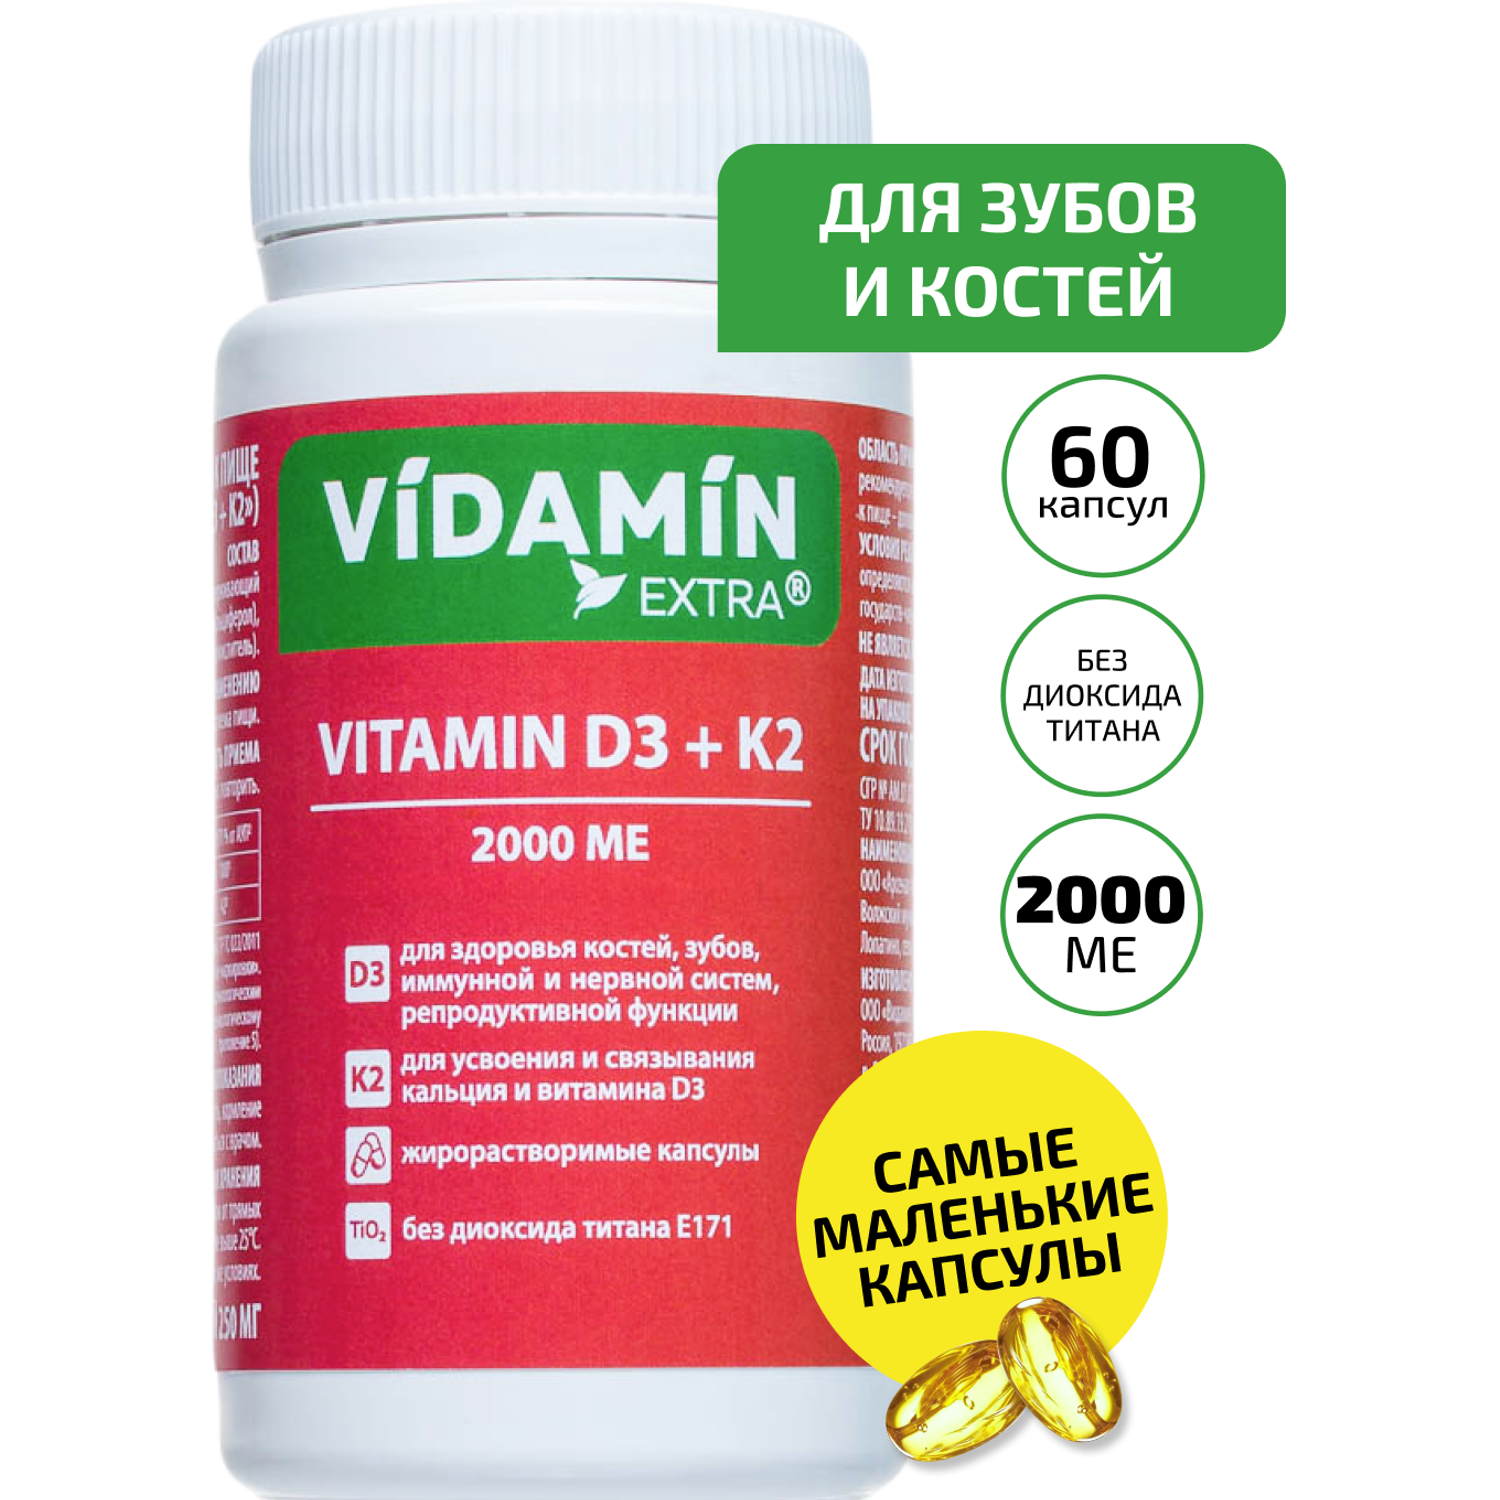 Витамин Д3 Витамин К2 VIDAMIN EXTRA 60 маленьких капсул жирорастворимый - фото 1